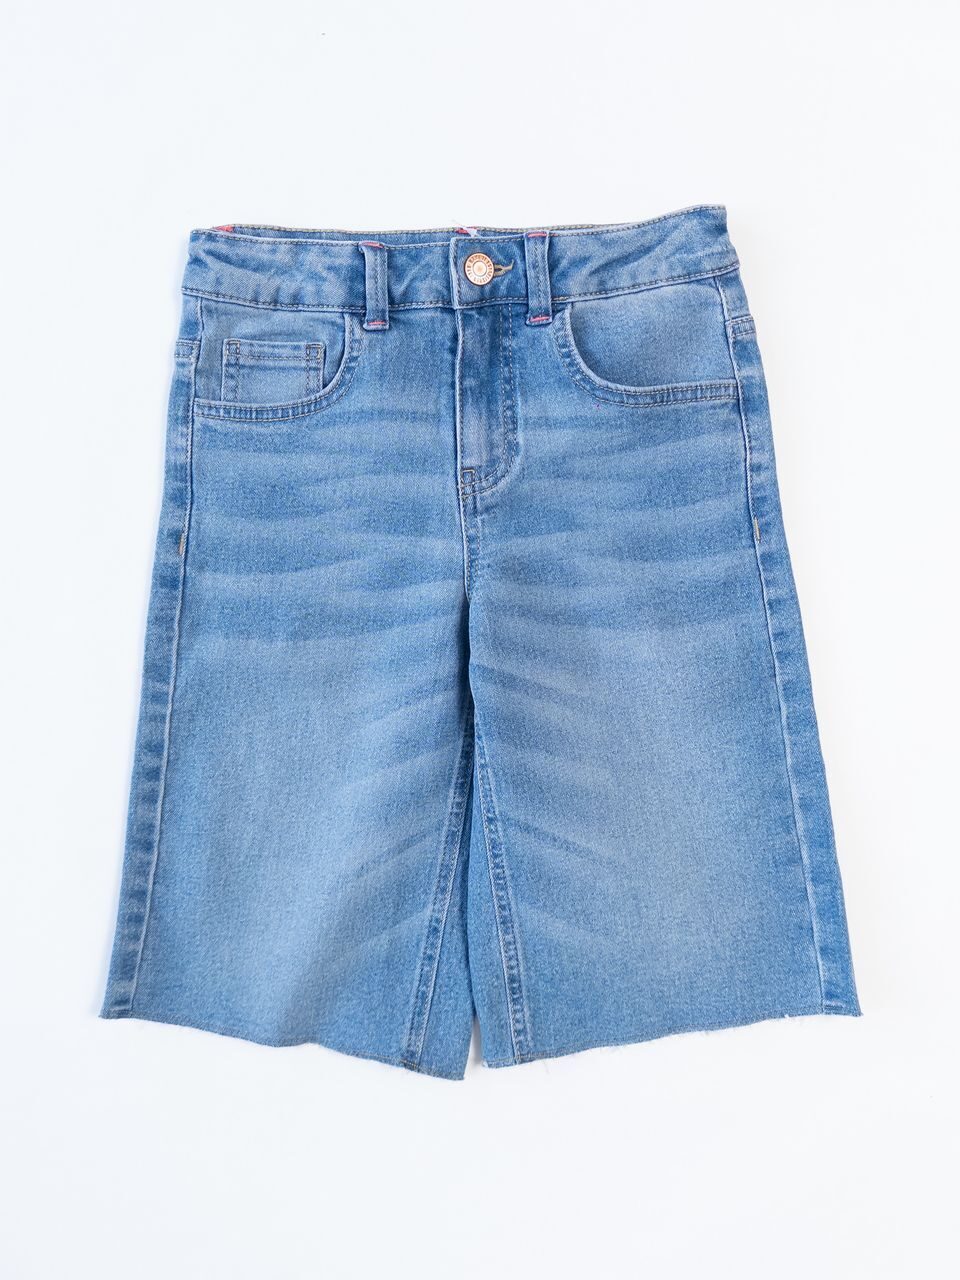 Шорты-бермуды джинсовые для девочки с утягивающей резинкой в поясе цвет голубой на рост 128 см 8 лет name it